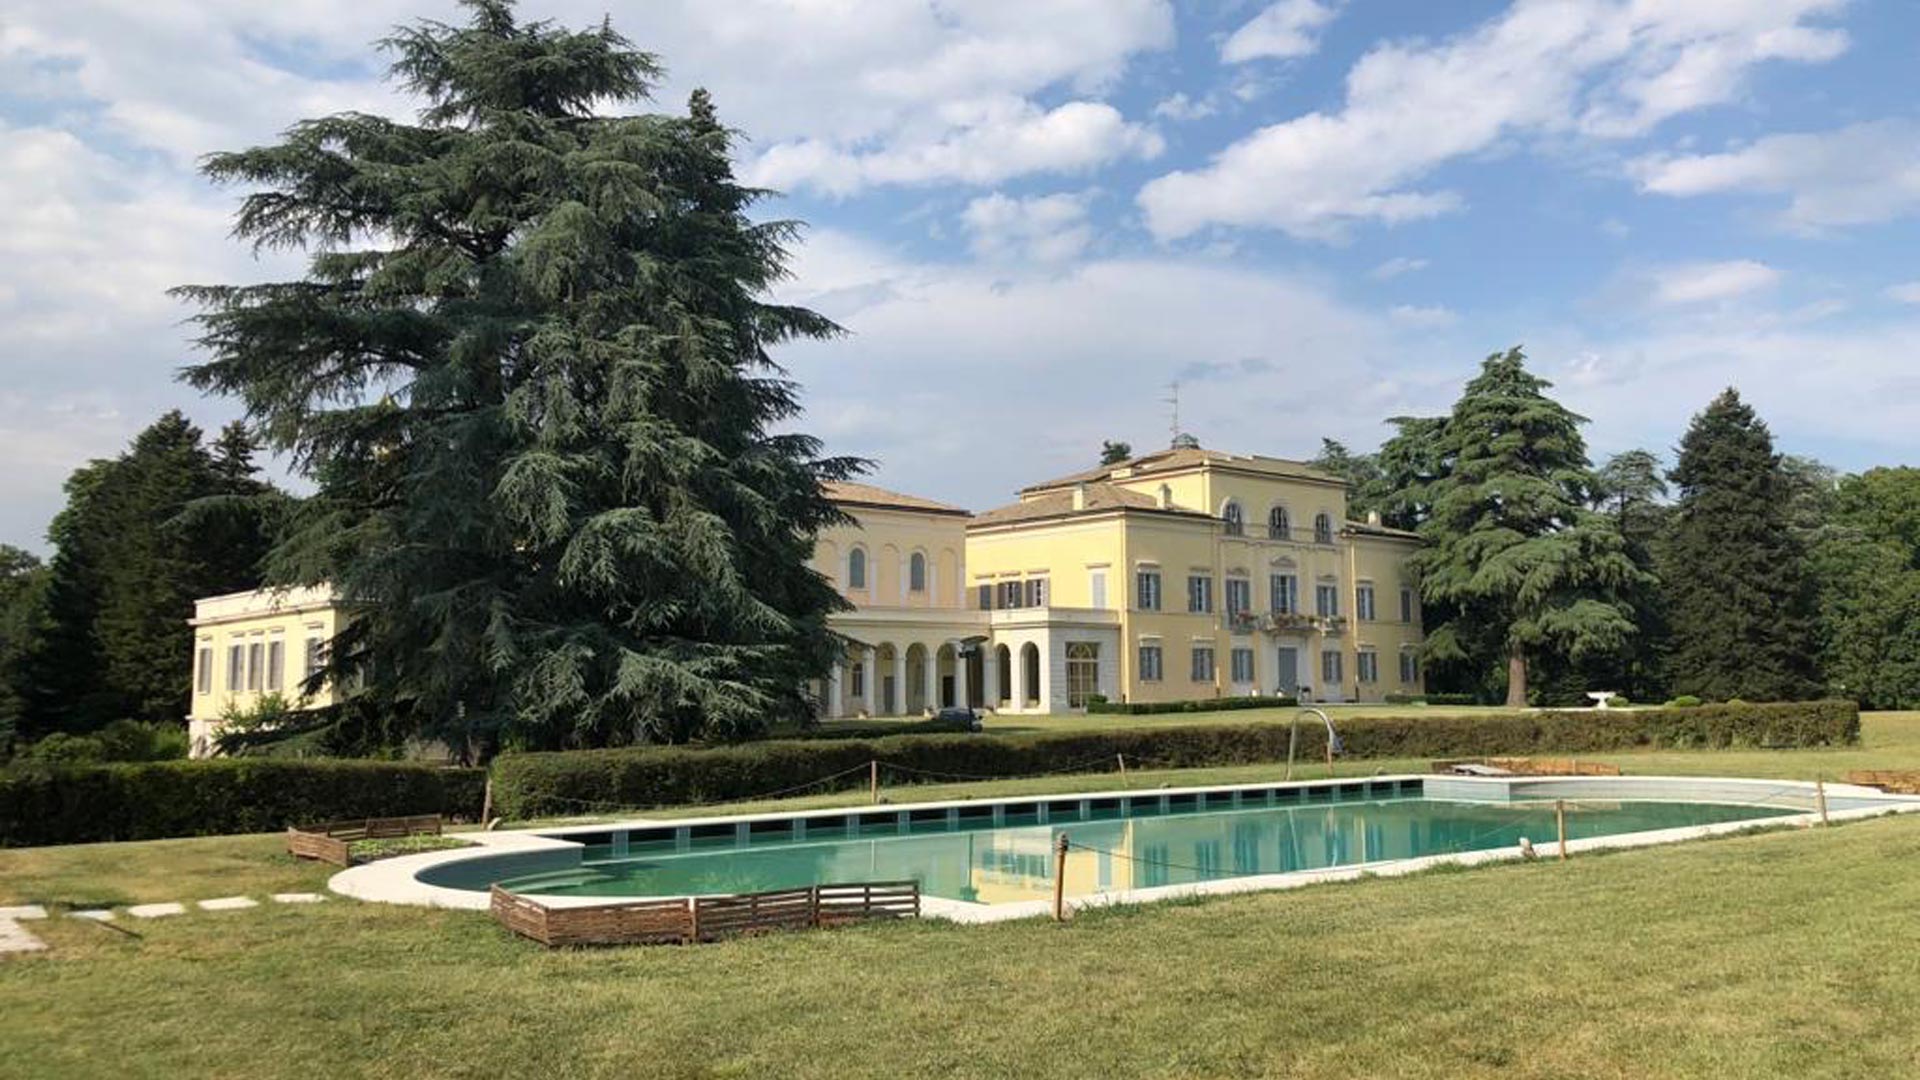 Italy, Parma – Villa Ferlaro 1.937.504 SqFt. – Price on request